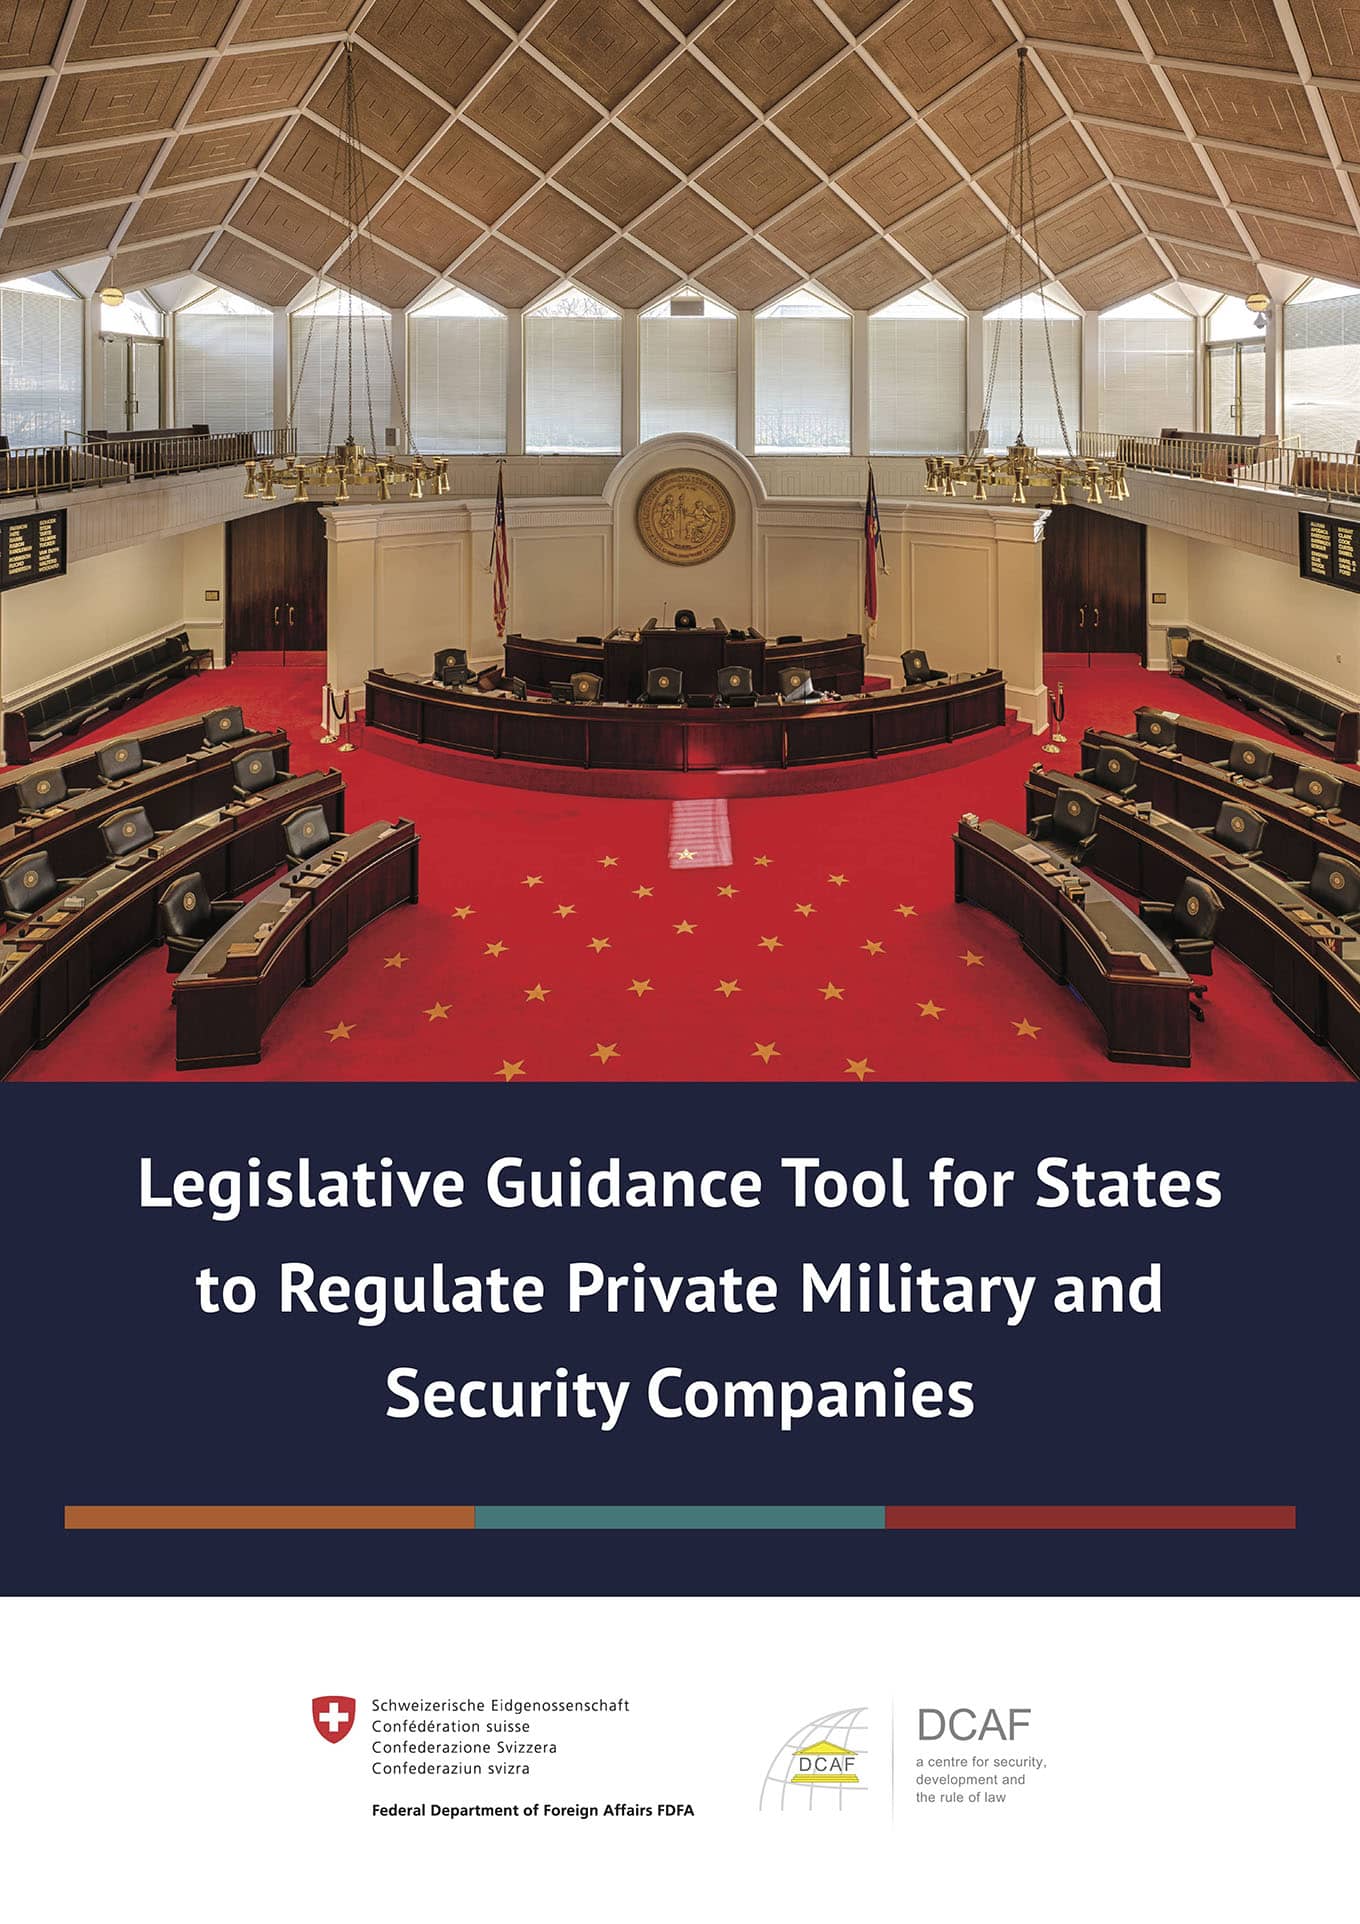 Le guide législatif pour la règlementation des EMSP par les Etats